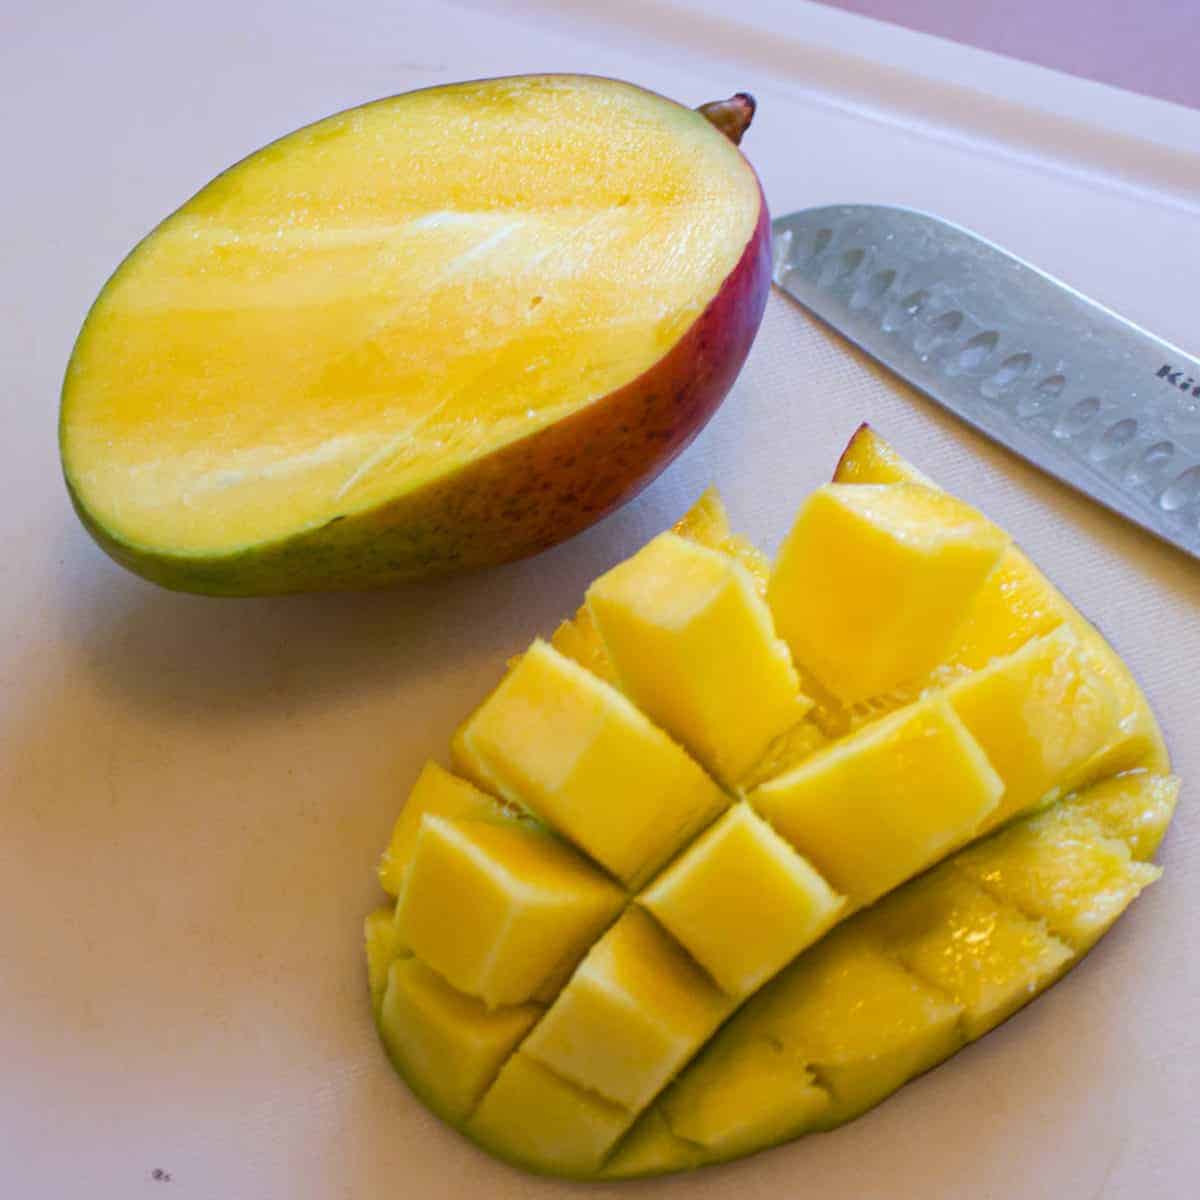 Mango cut in half on a cutting board.